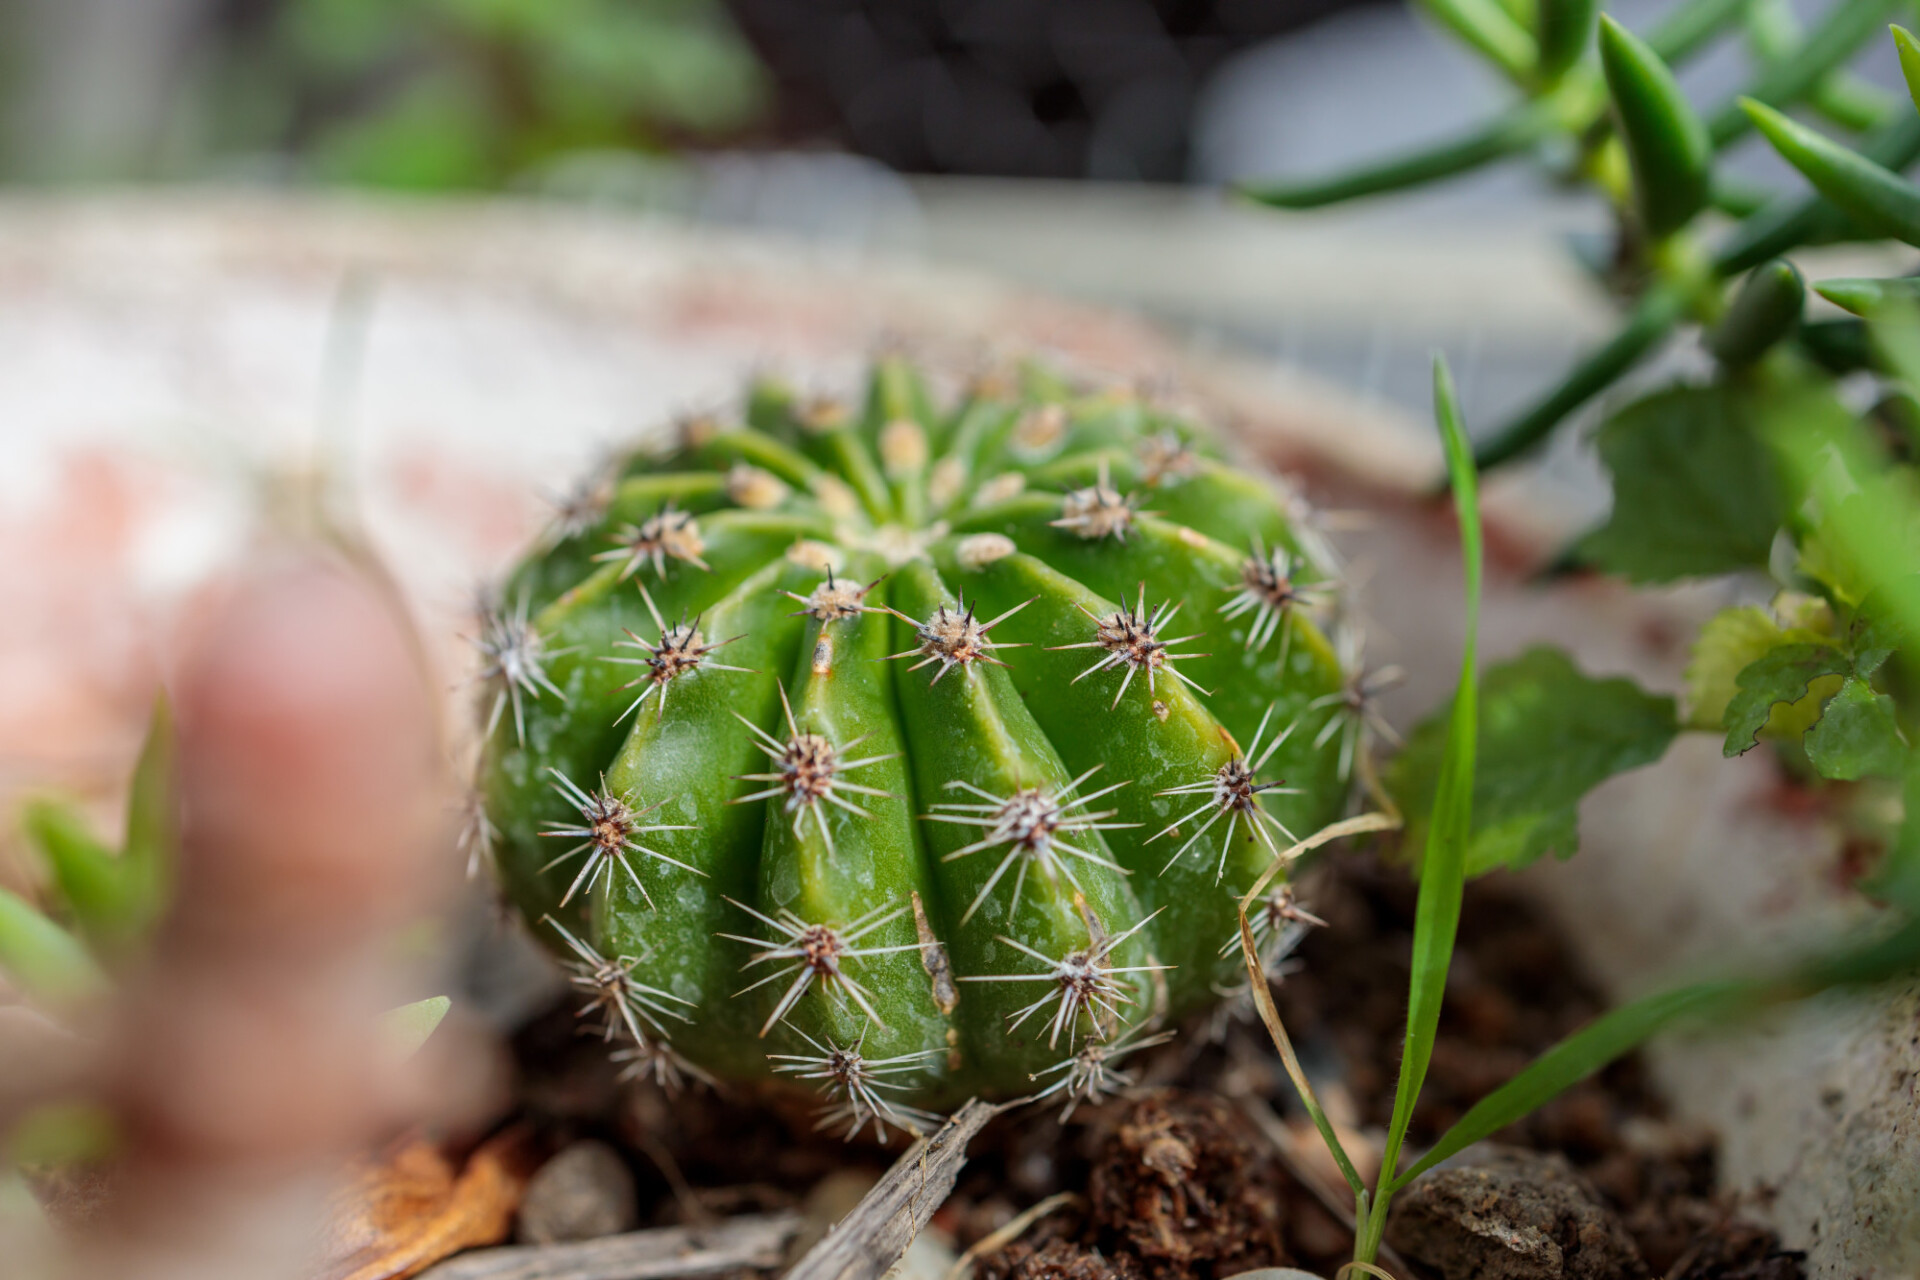 Gymnocalycium saglionis - Giant Chin Cactus